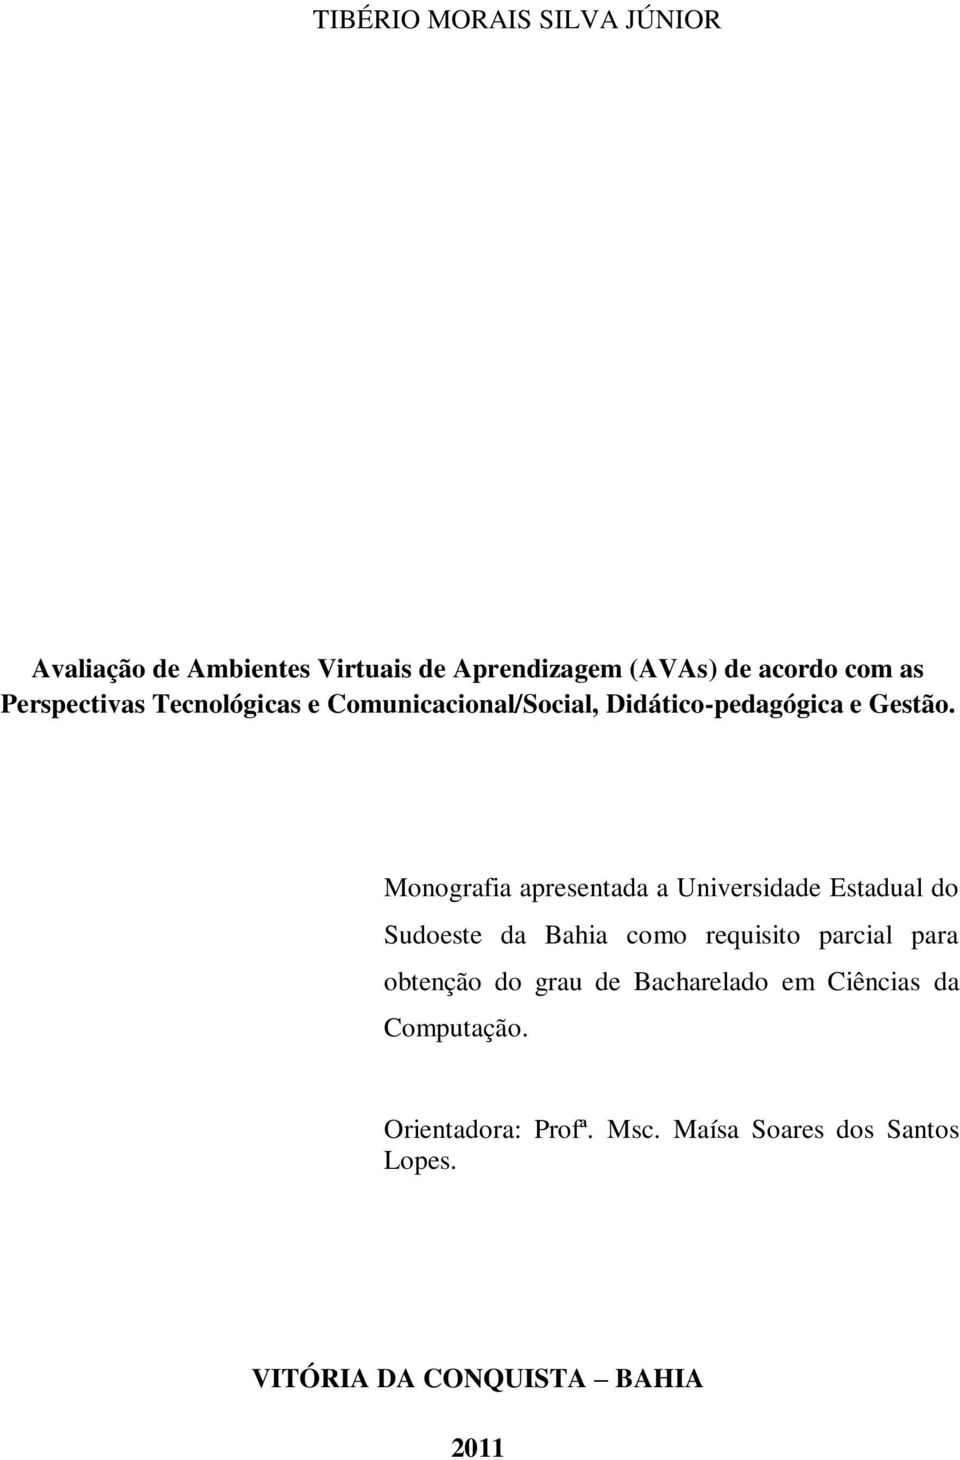 Monografia apresentada a Universidade Estadual do Sudoeste da Bahia como requisito parcial para obtenção